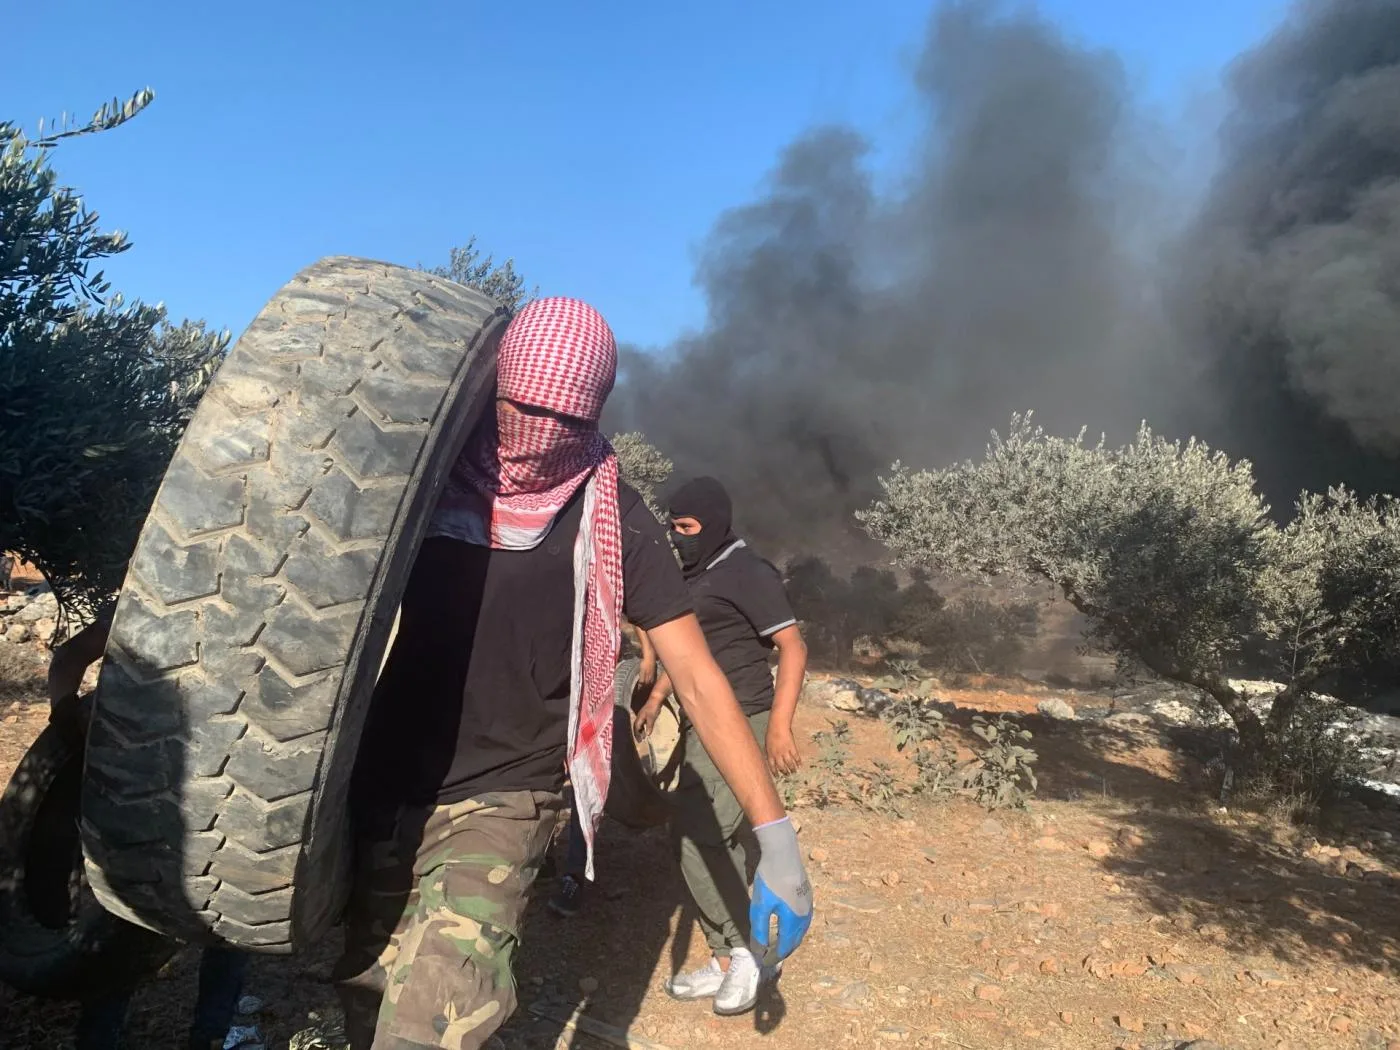 رجال فلسطينيون يستخدمون الإطارات المشتعلة للاحتجاج ضد الاستيطان غير القانوني في بيتا